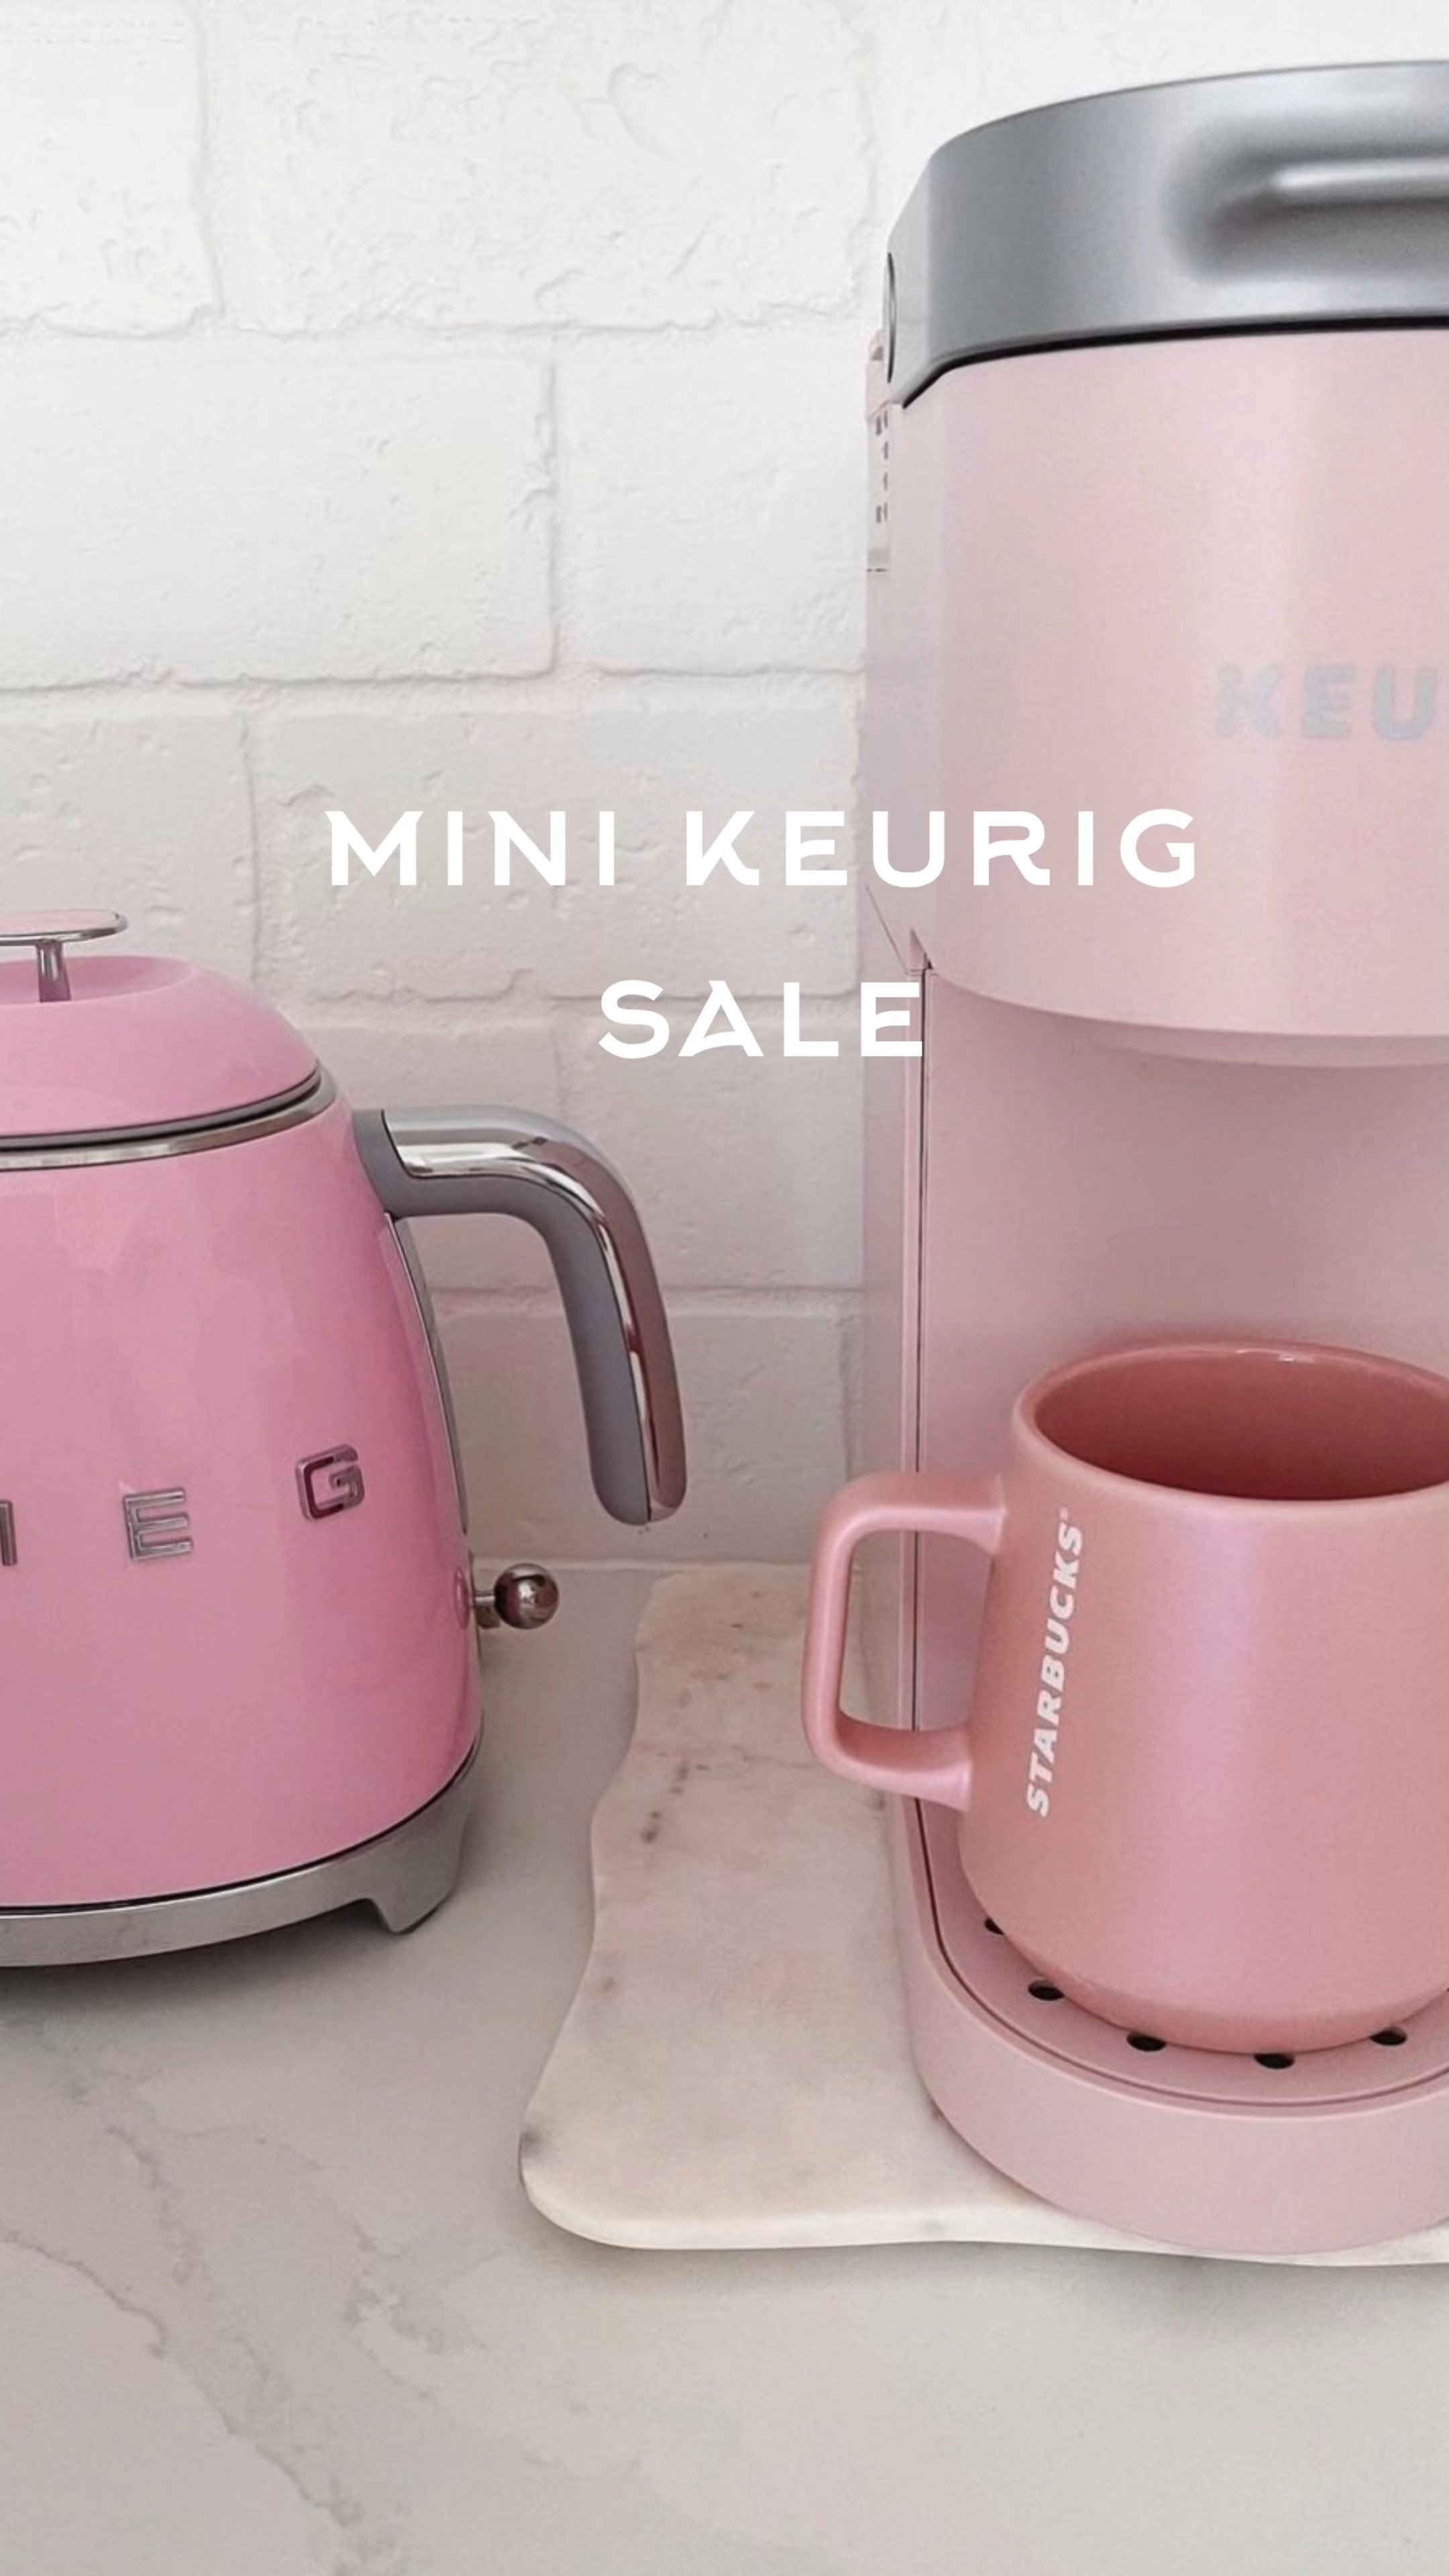 Keurig K-Mini Single Serve Coffee … curated on LTK